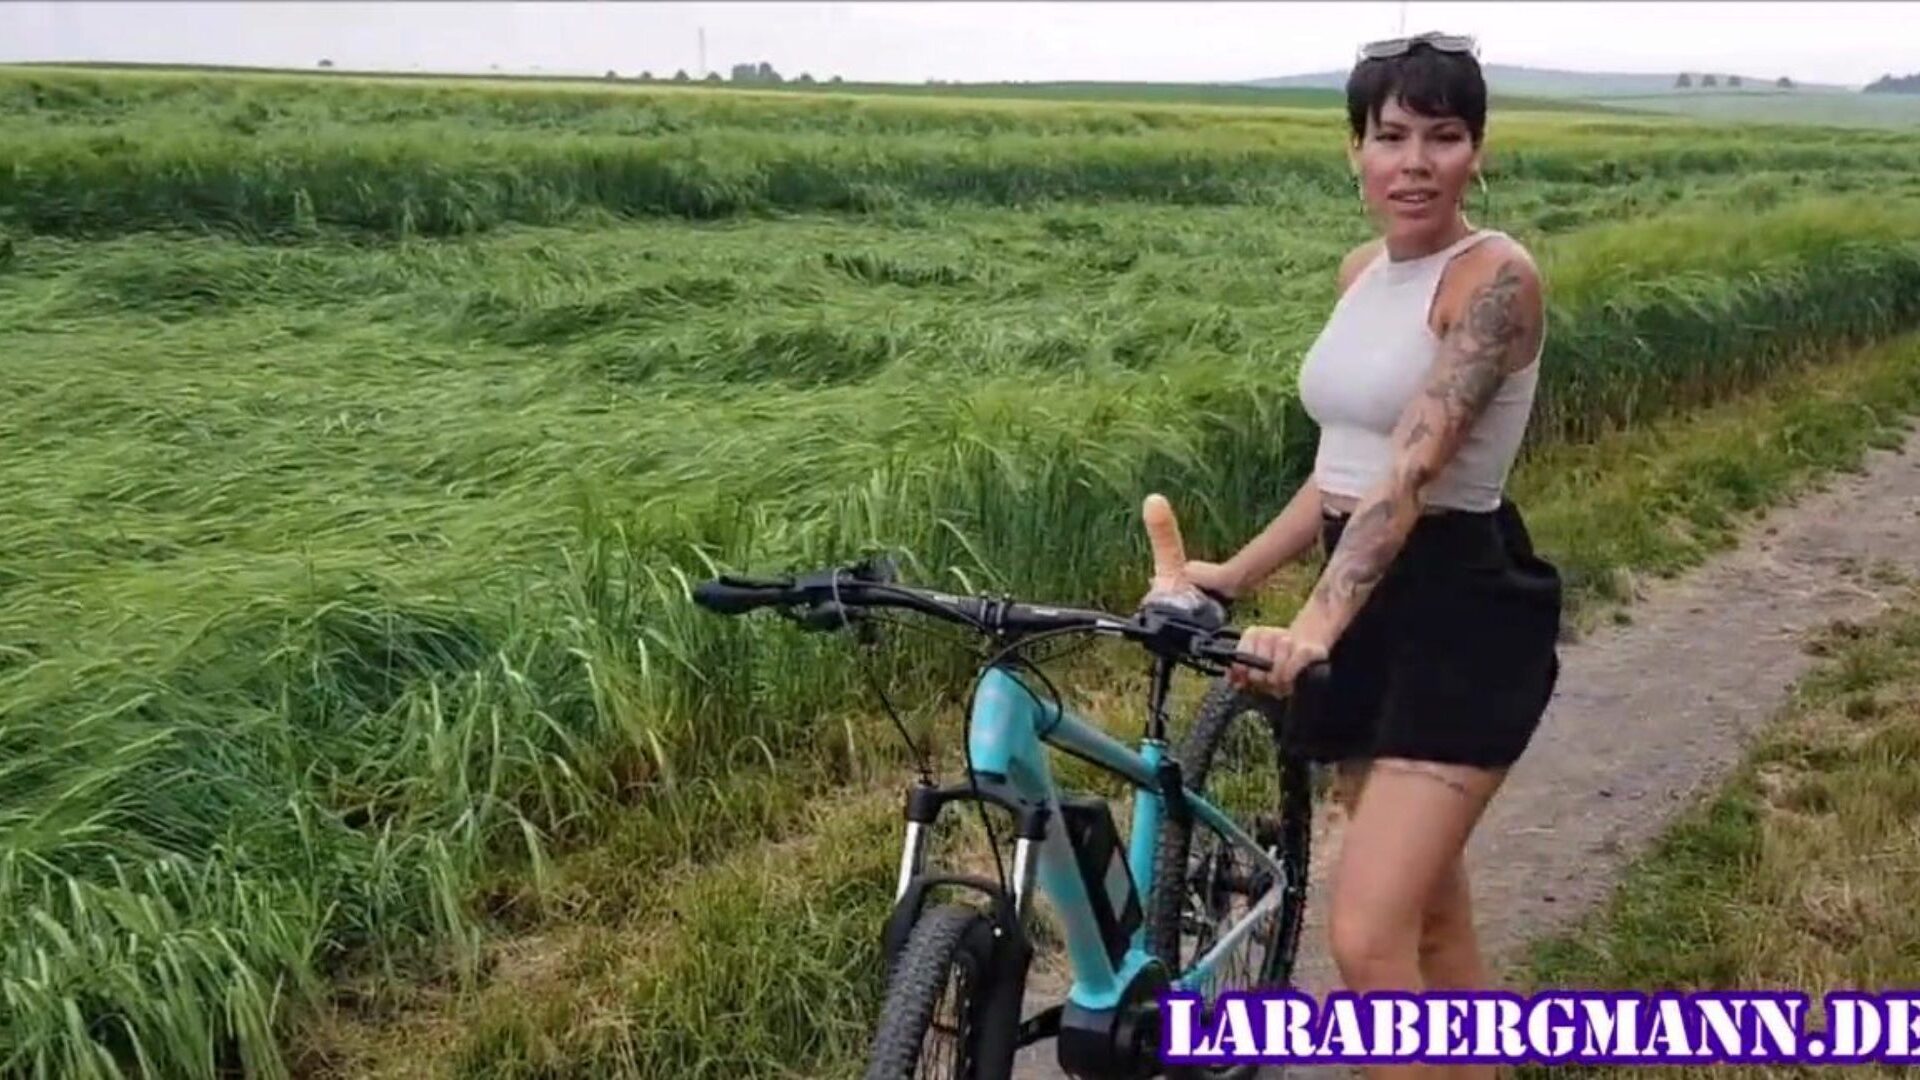 το πρωτότυπο! Η Λάρα Μπέργκμαν χρησιμοποιεί το ποδήλατό σας!